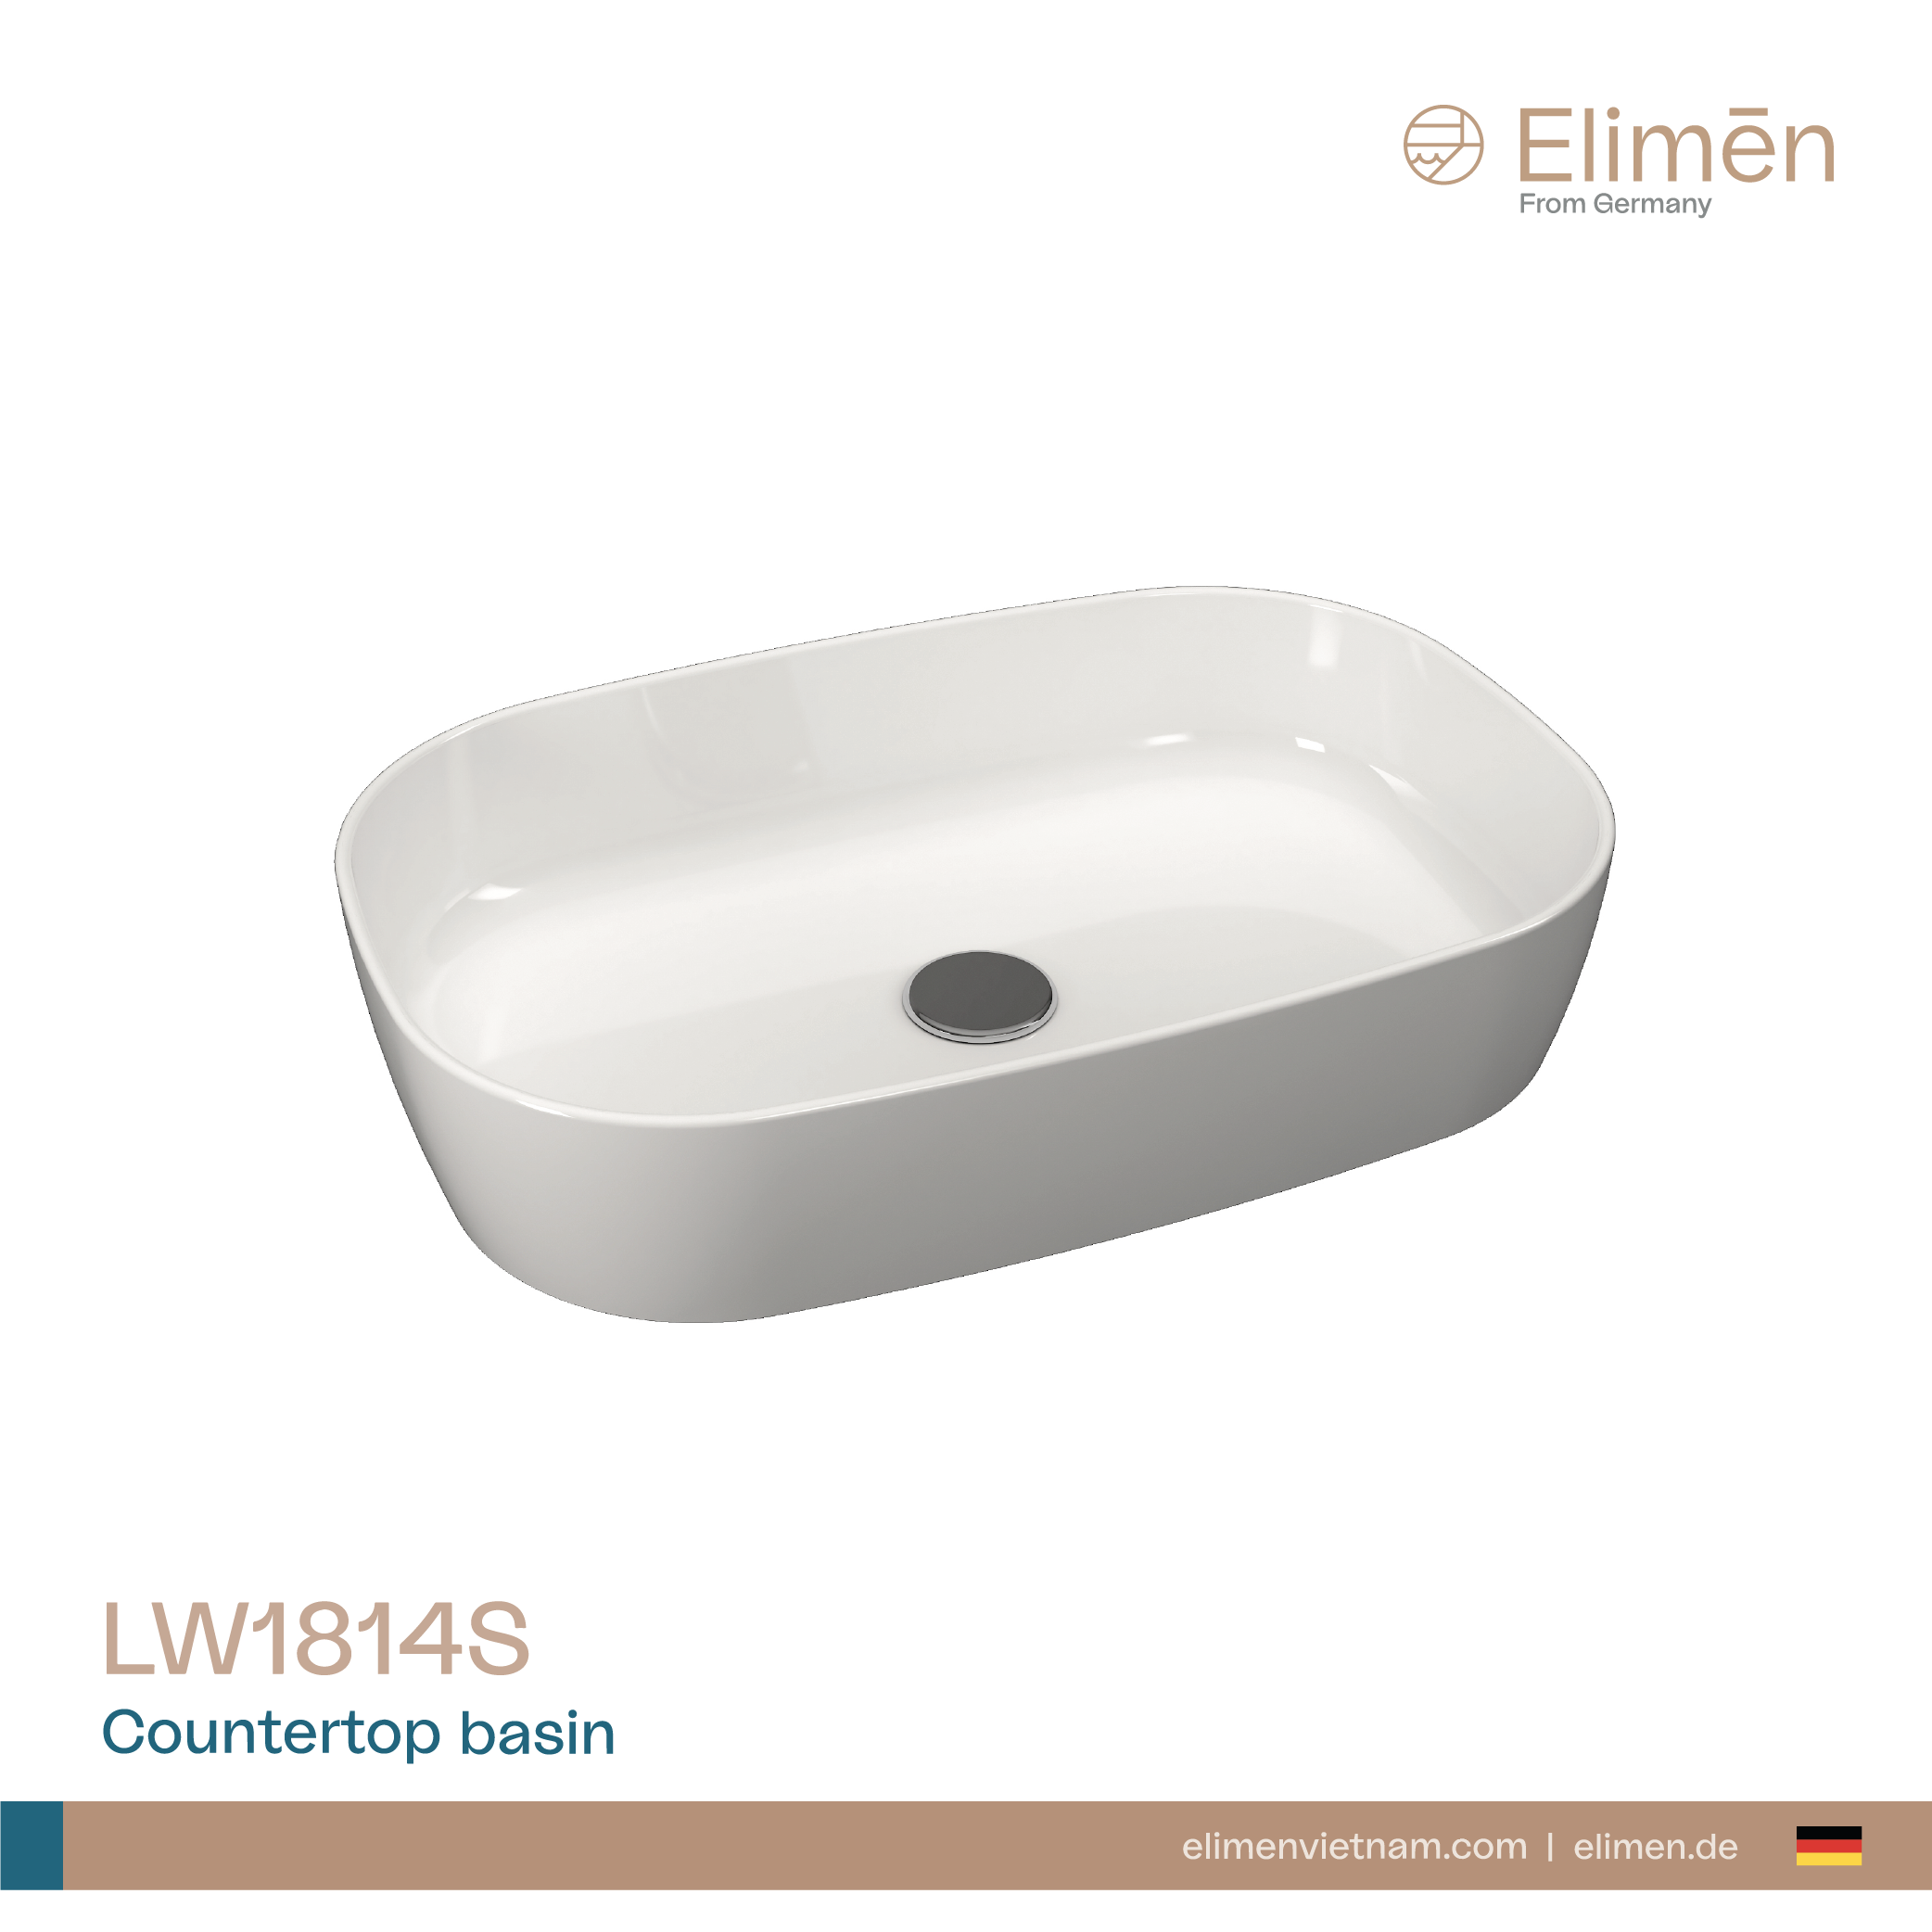 Elimen Countertop basin - Code